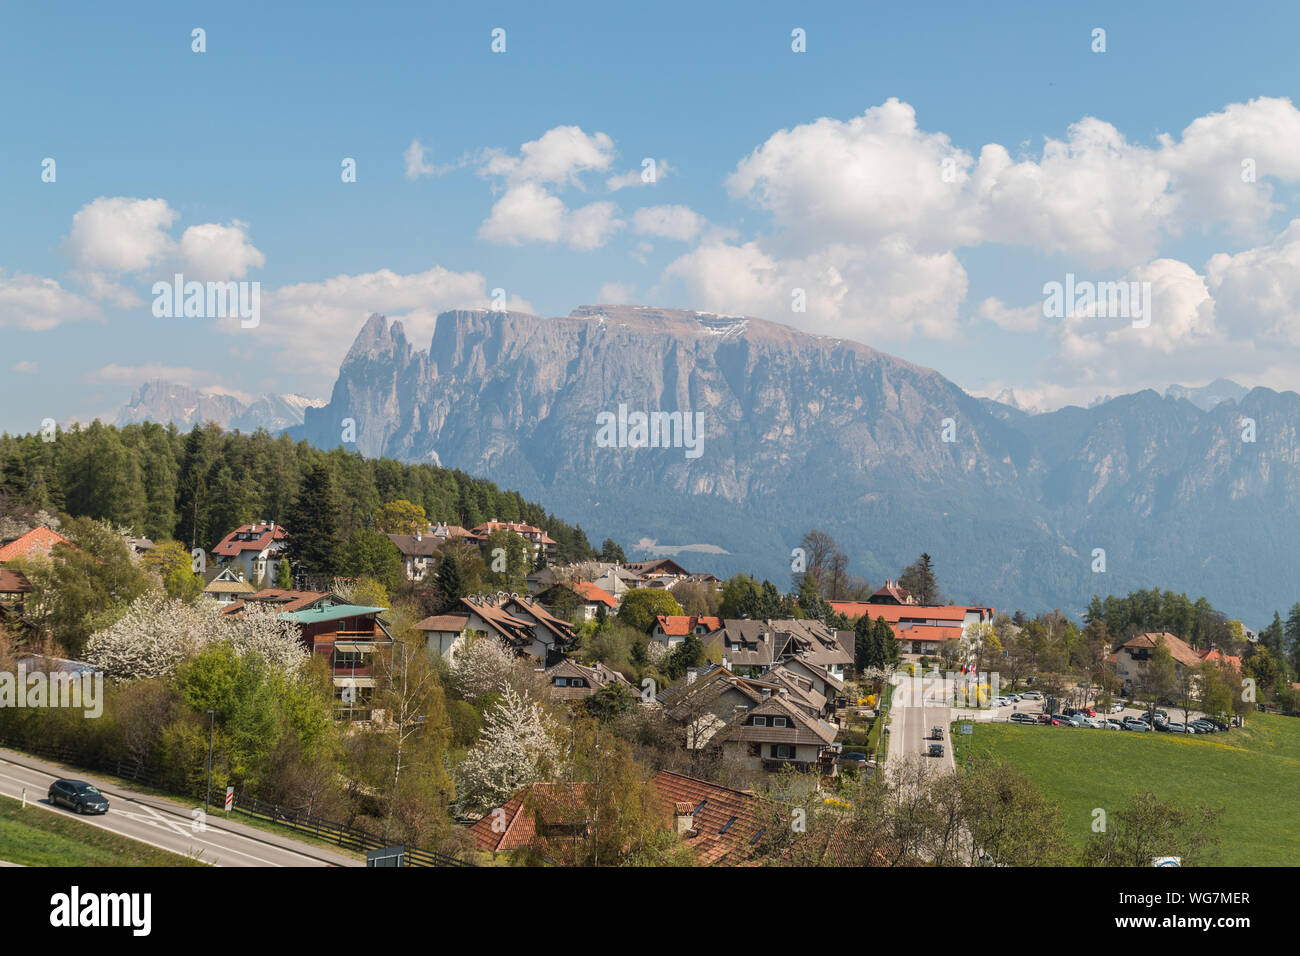 Glimpses of the Renon plateau, Bolzano, Trentino Alto Adige, Italy Stock Photo